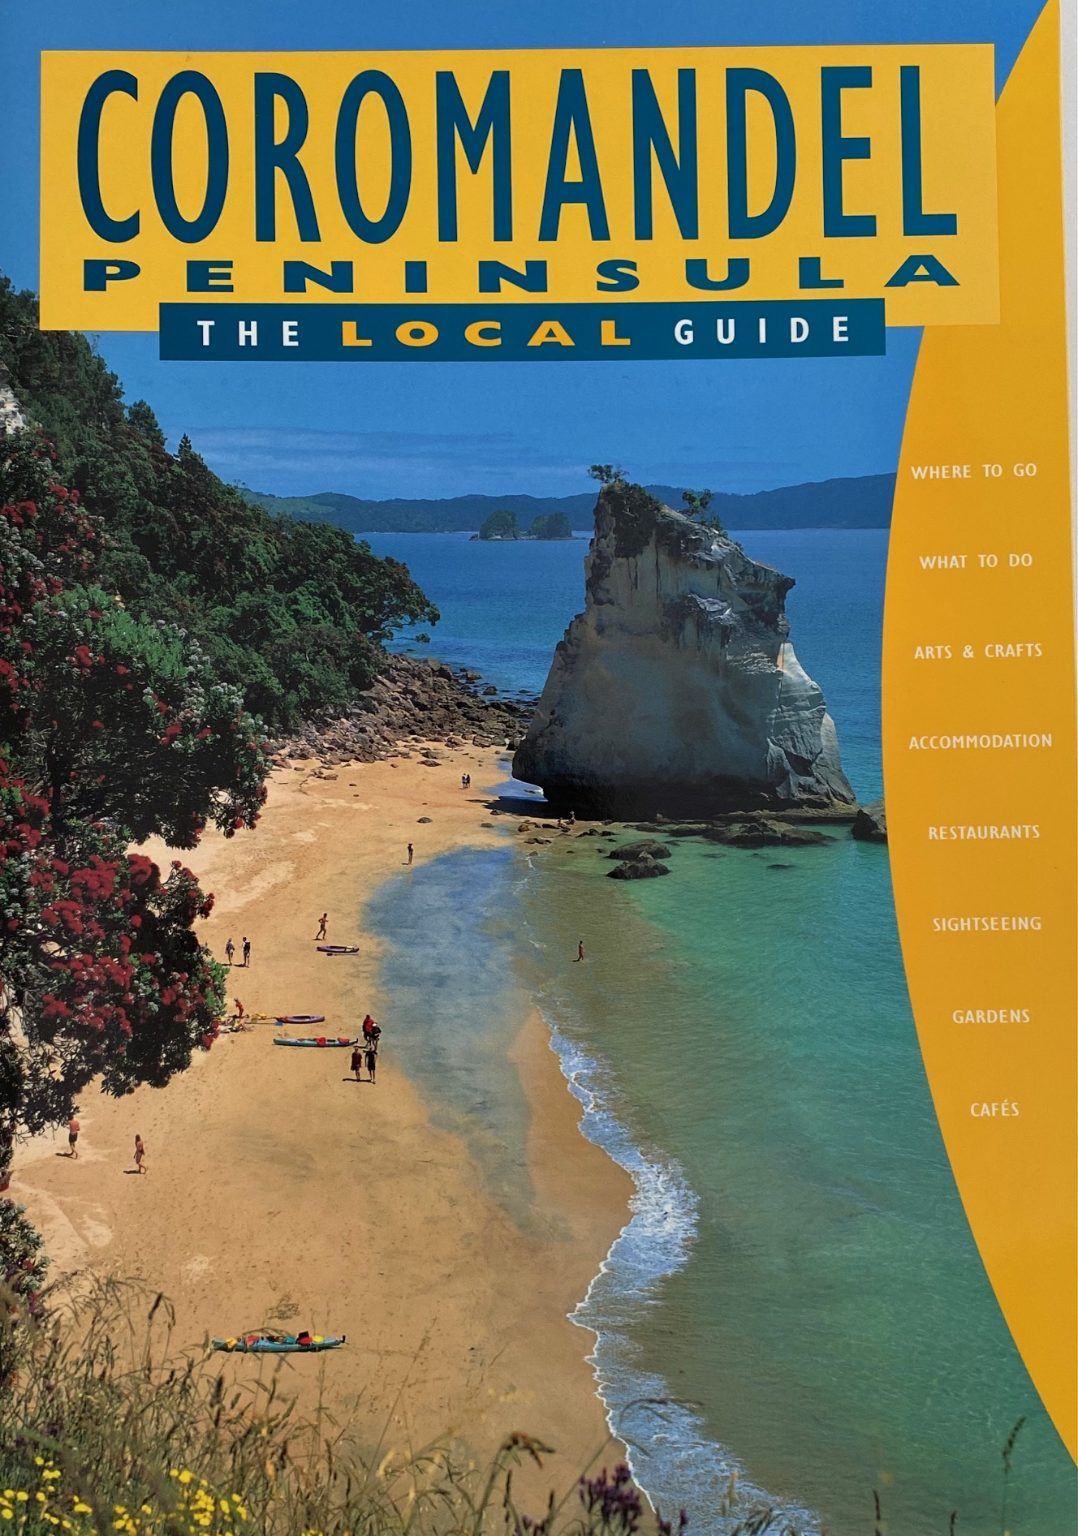 COROMANDEL PENINSULA: The Local Guide